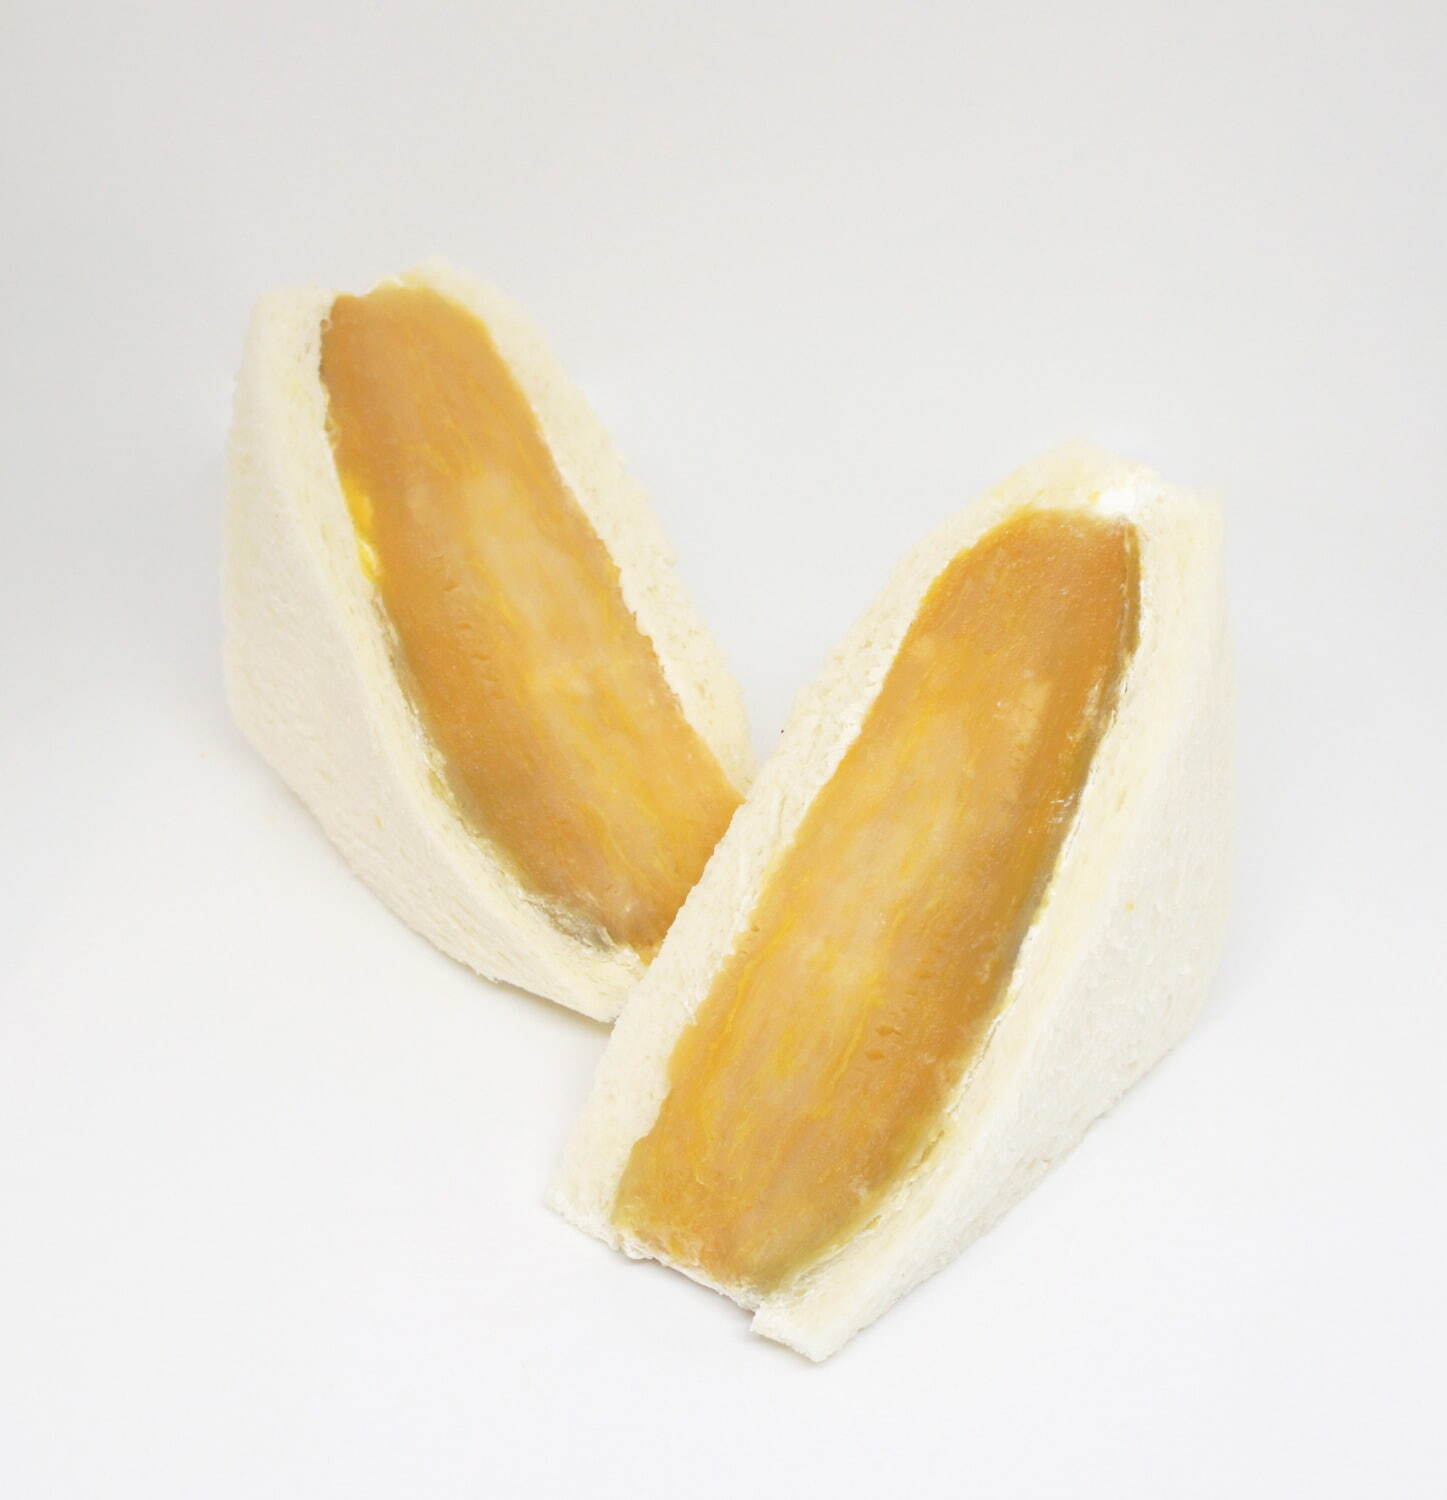 Sweet potato sandwich 650 yen